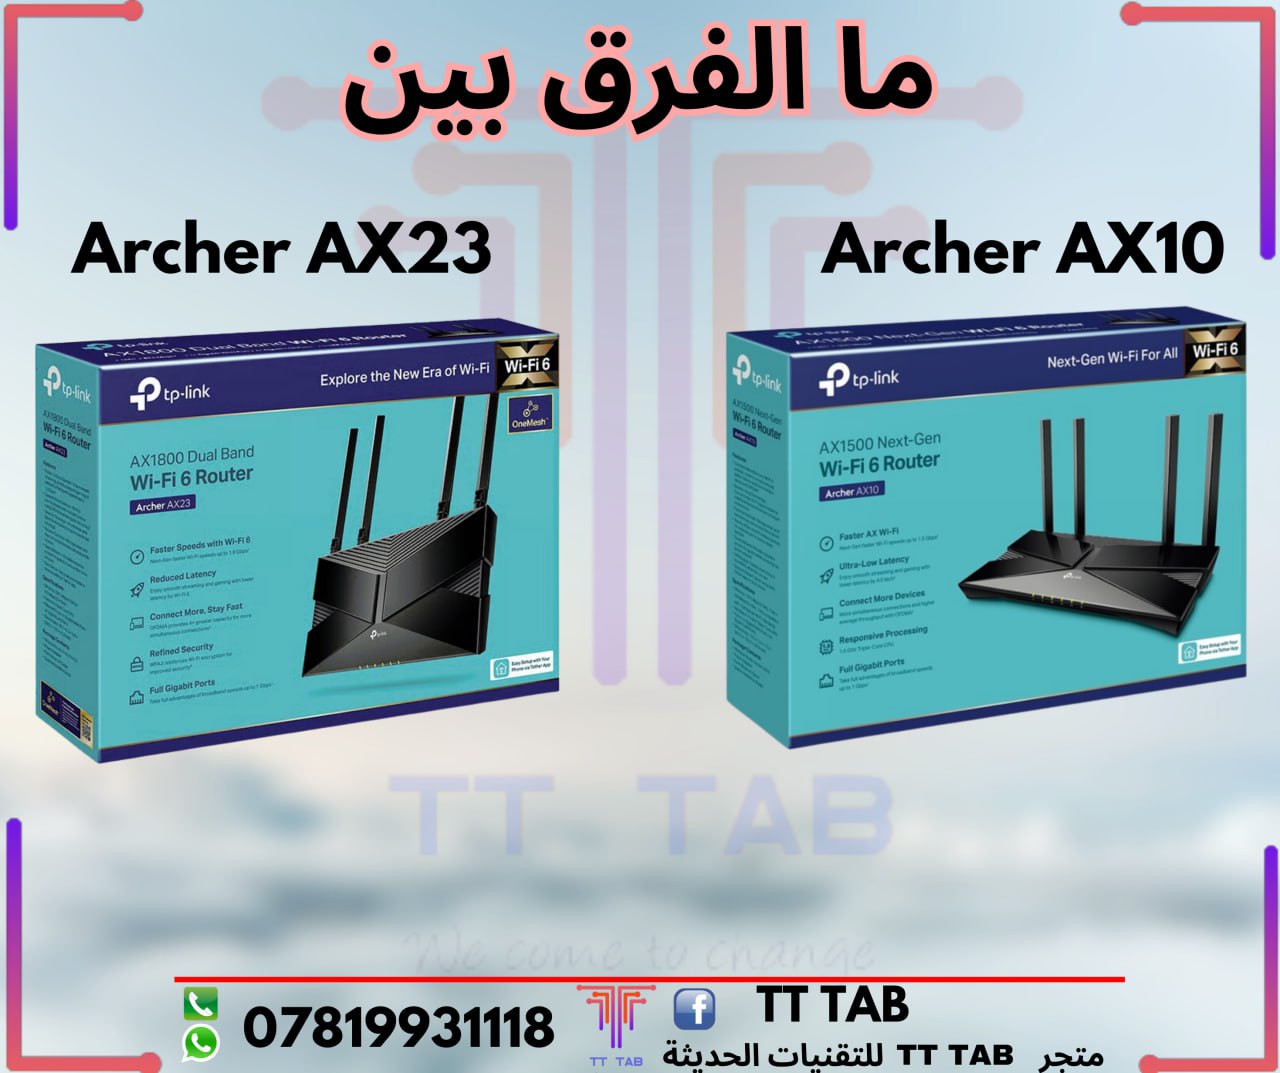 ما الفرق بين راوتر Archer AX10 و Archer AX23؟